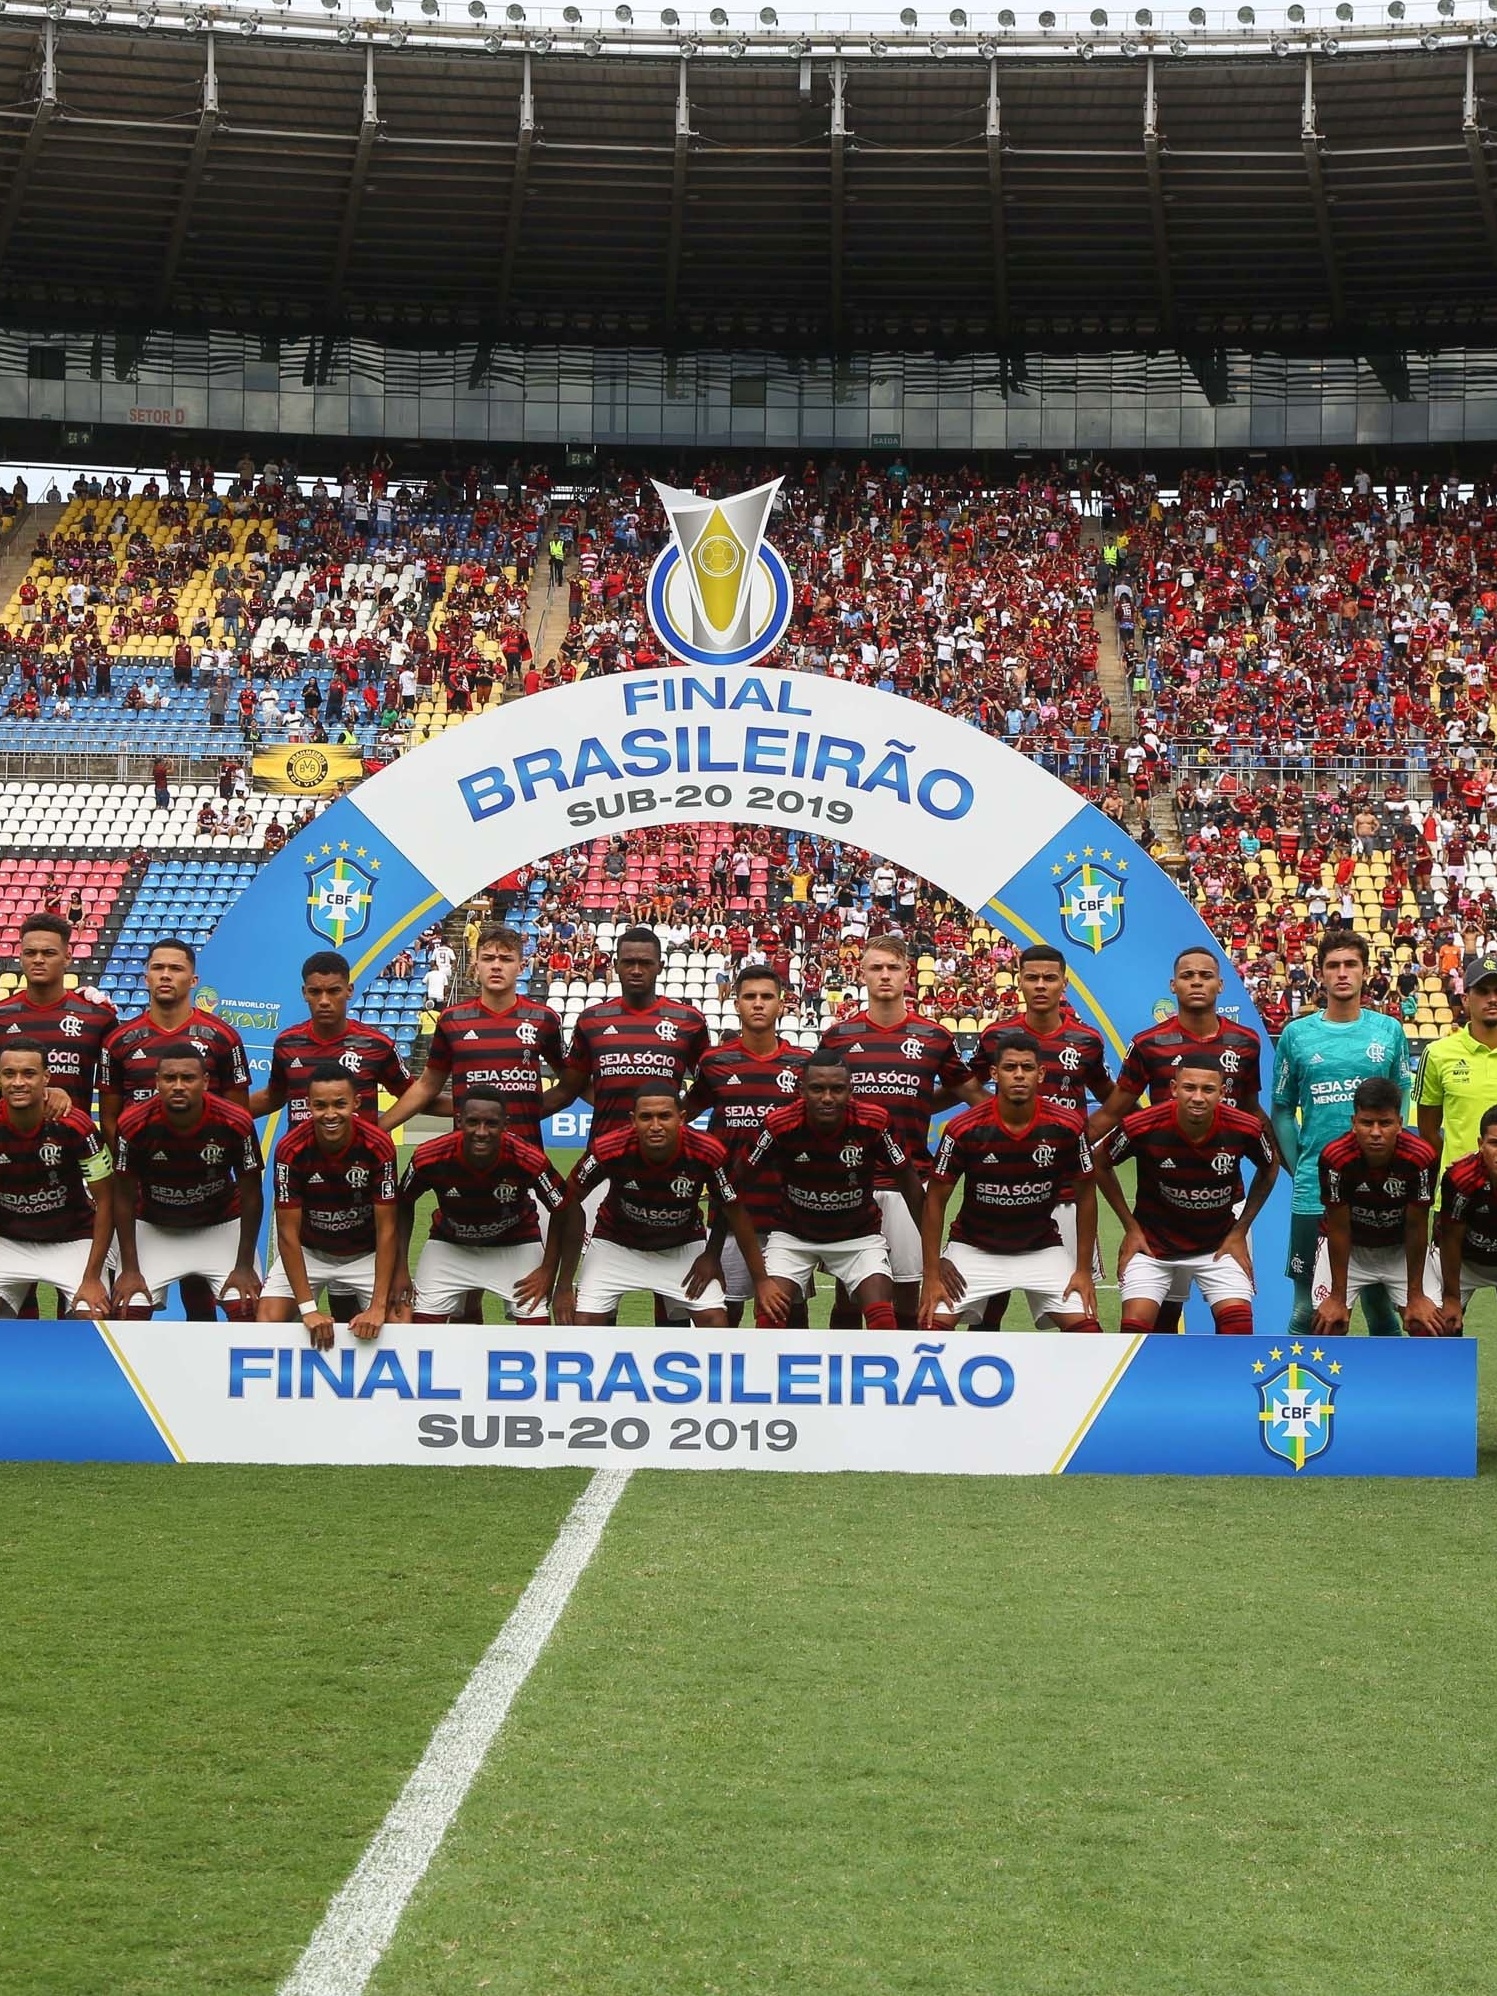 Fla e Flu avançam para as semifinais do Brasileiro Sub-20 de futebol